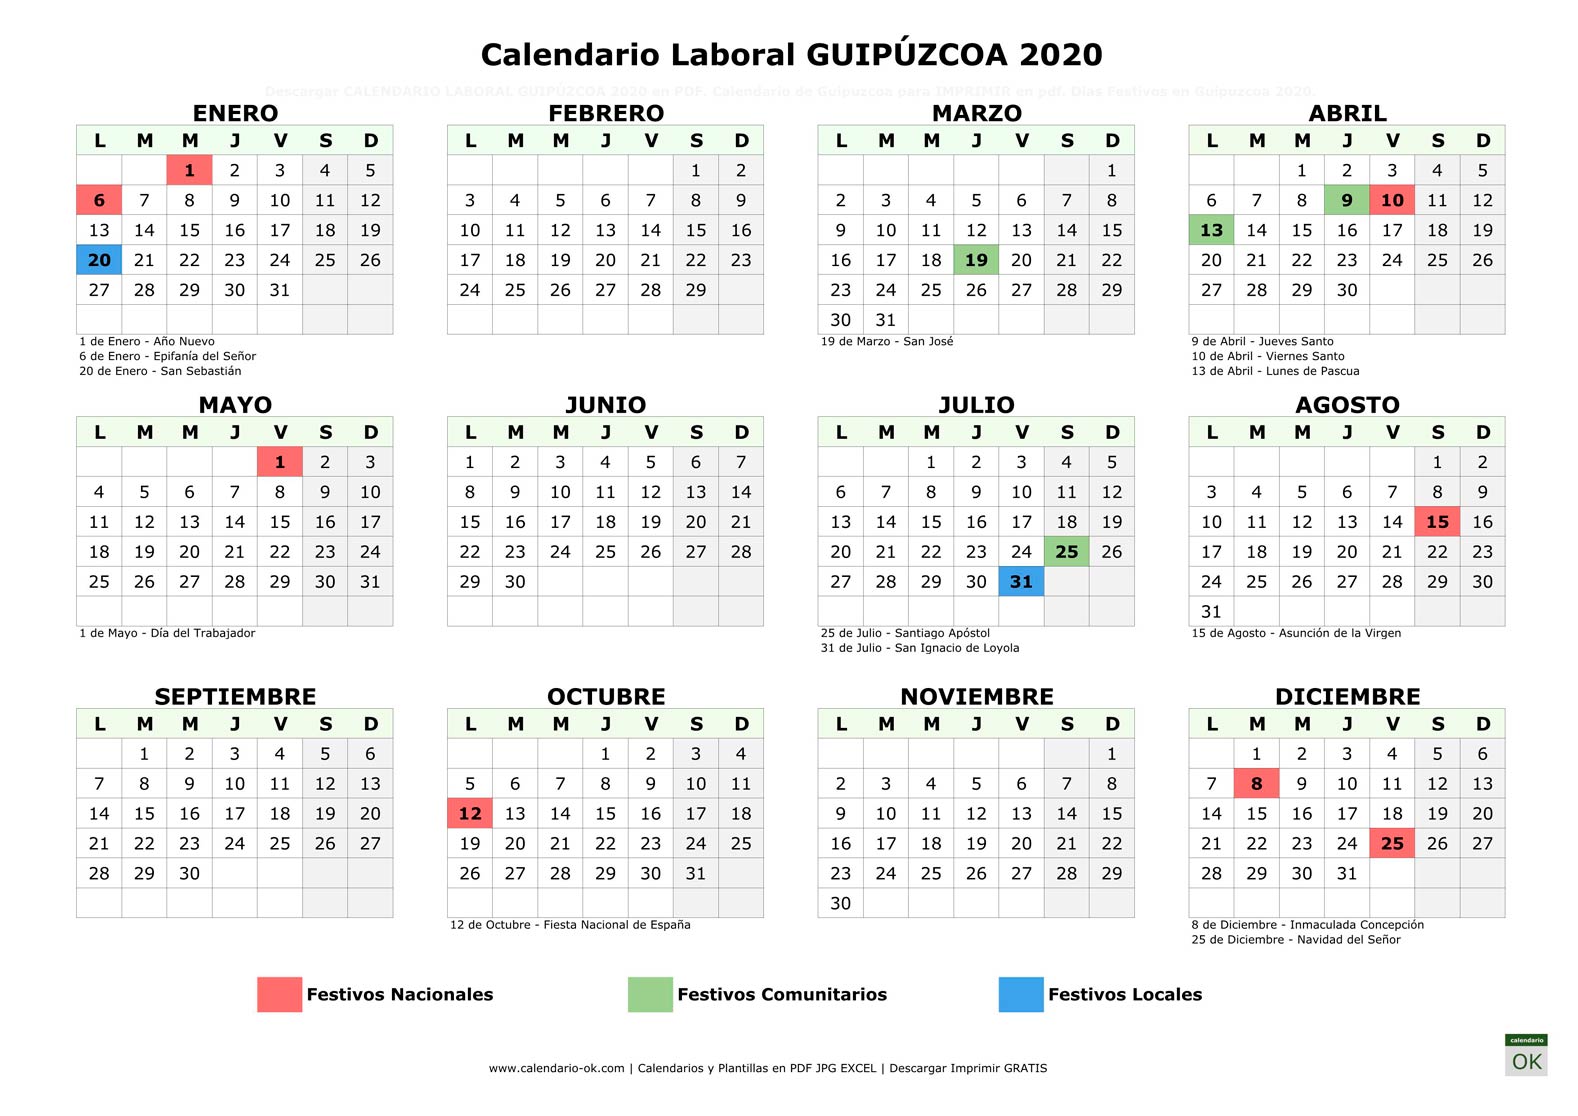 Calendario Laboral GUIPÚZCOA 2020 horizontal